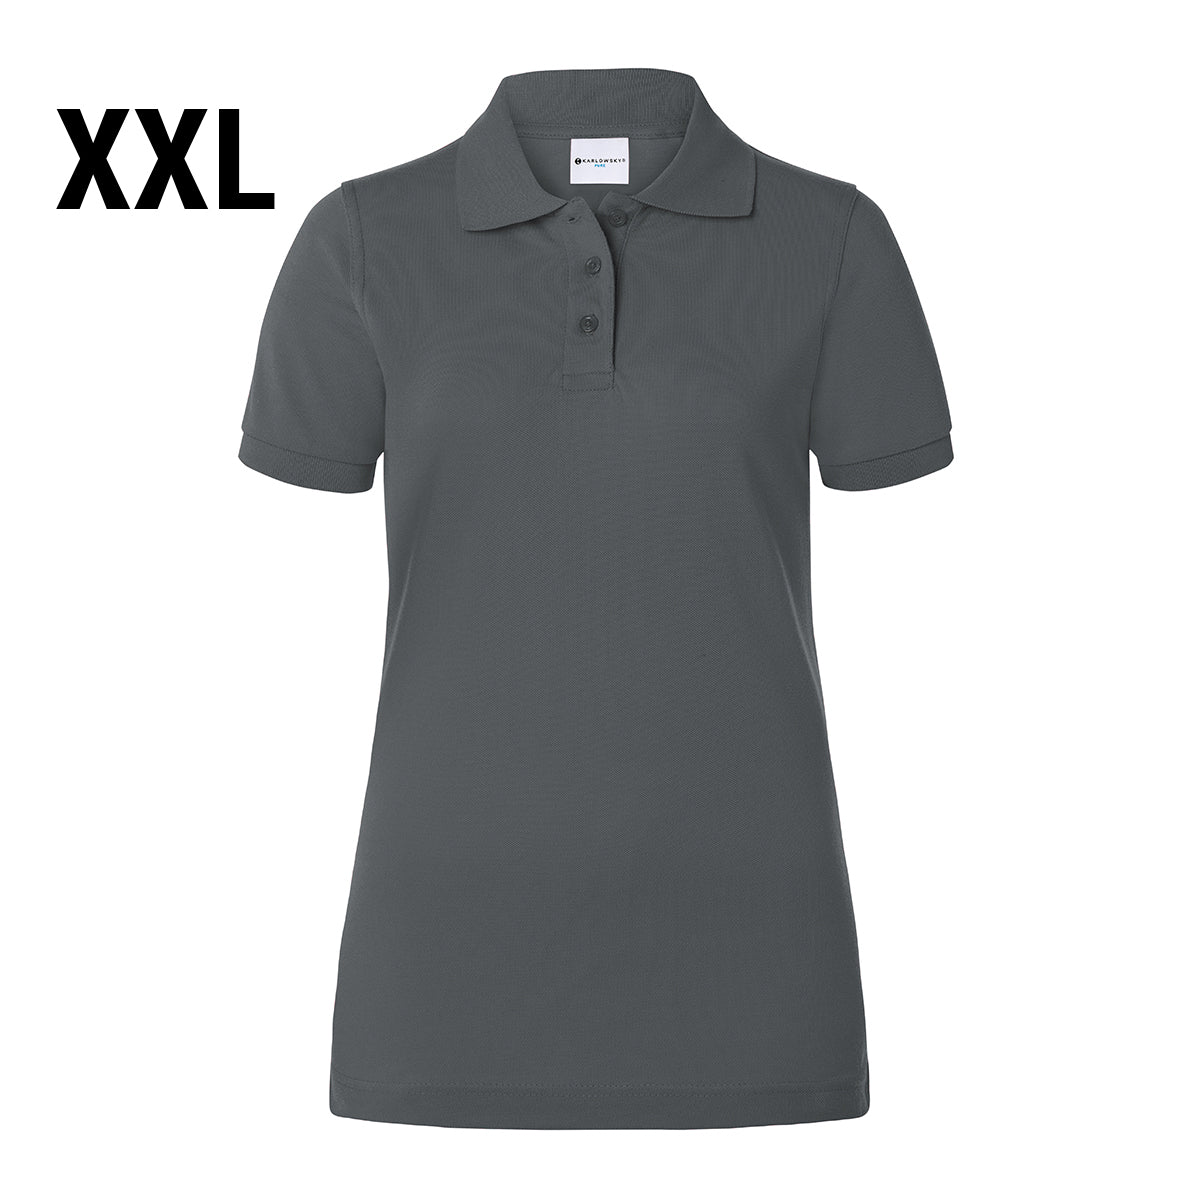 Karlowsky - Arbejdsbeklædning Basic Poloshirt til damer - Antracit - Størrelse: 2XL